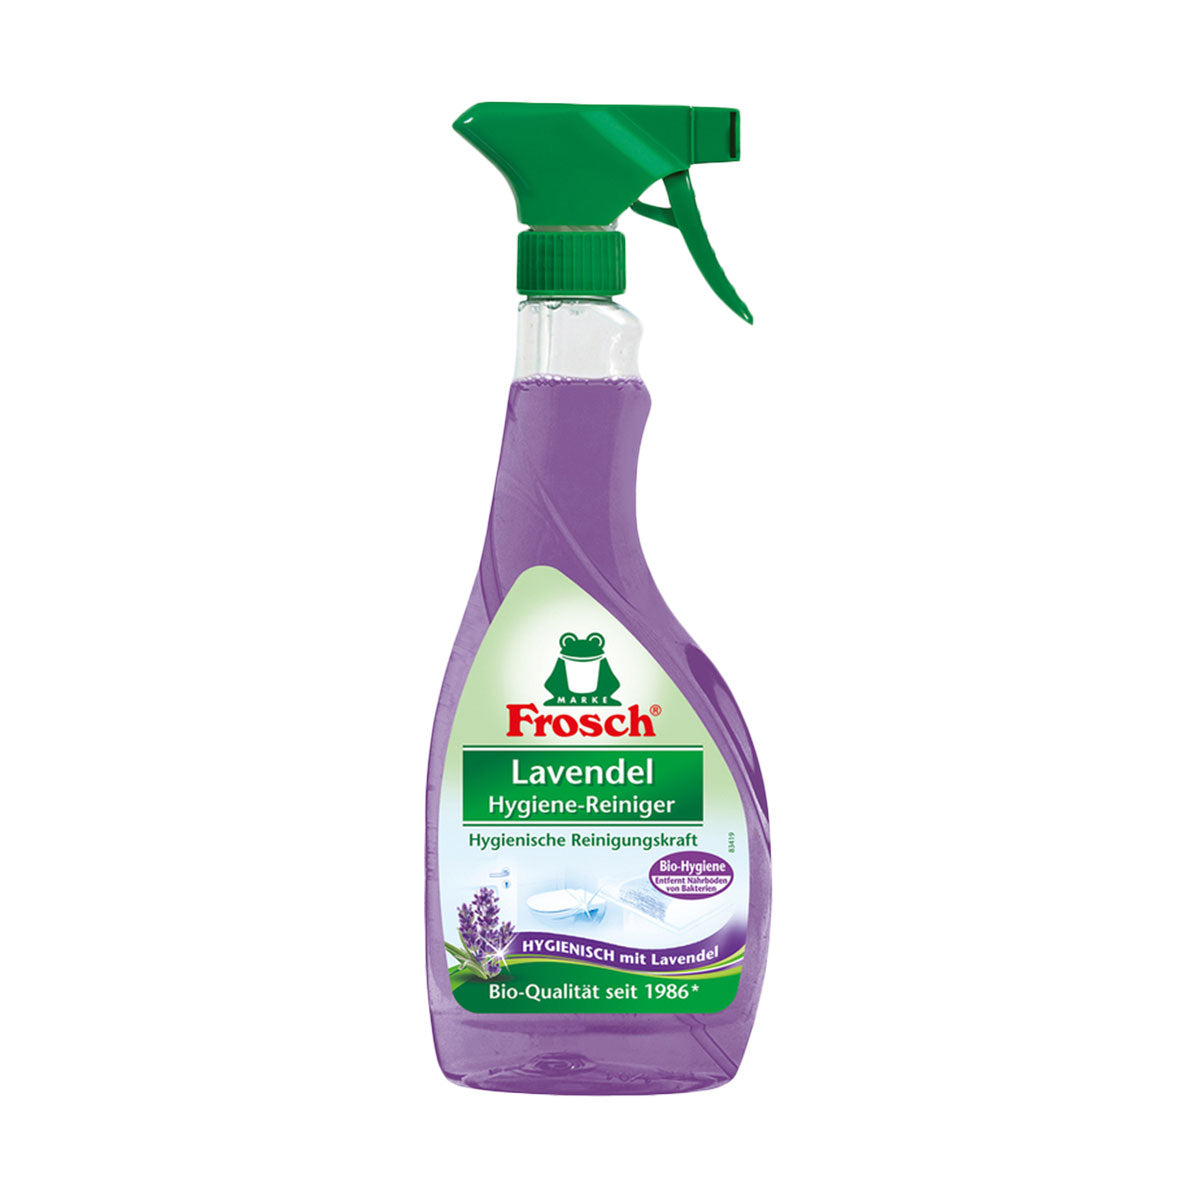 Limpiador baño aroma lavanda Frosch 500 ml - Producto Ecológico